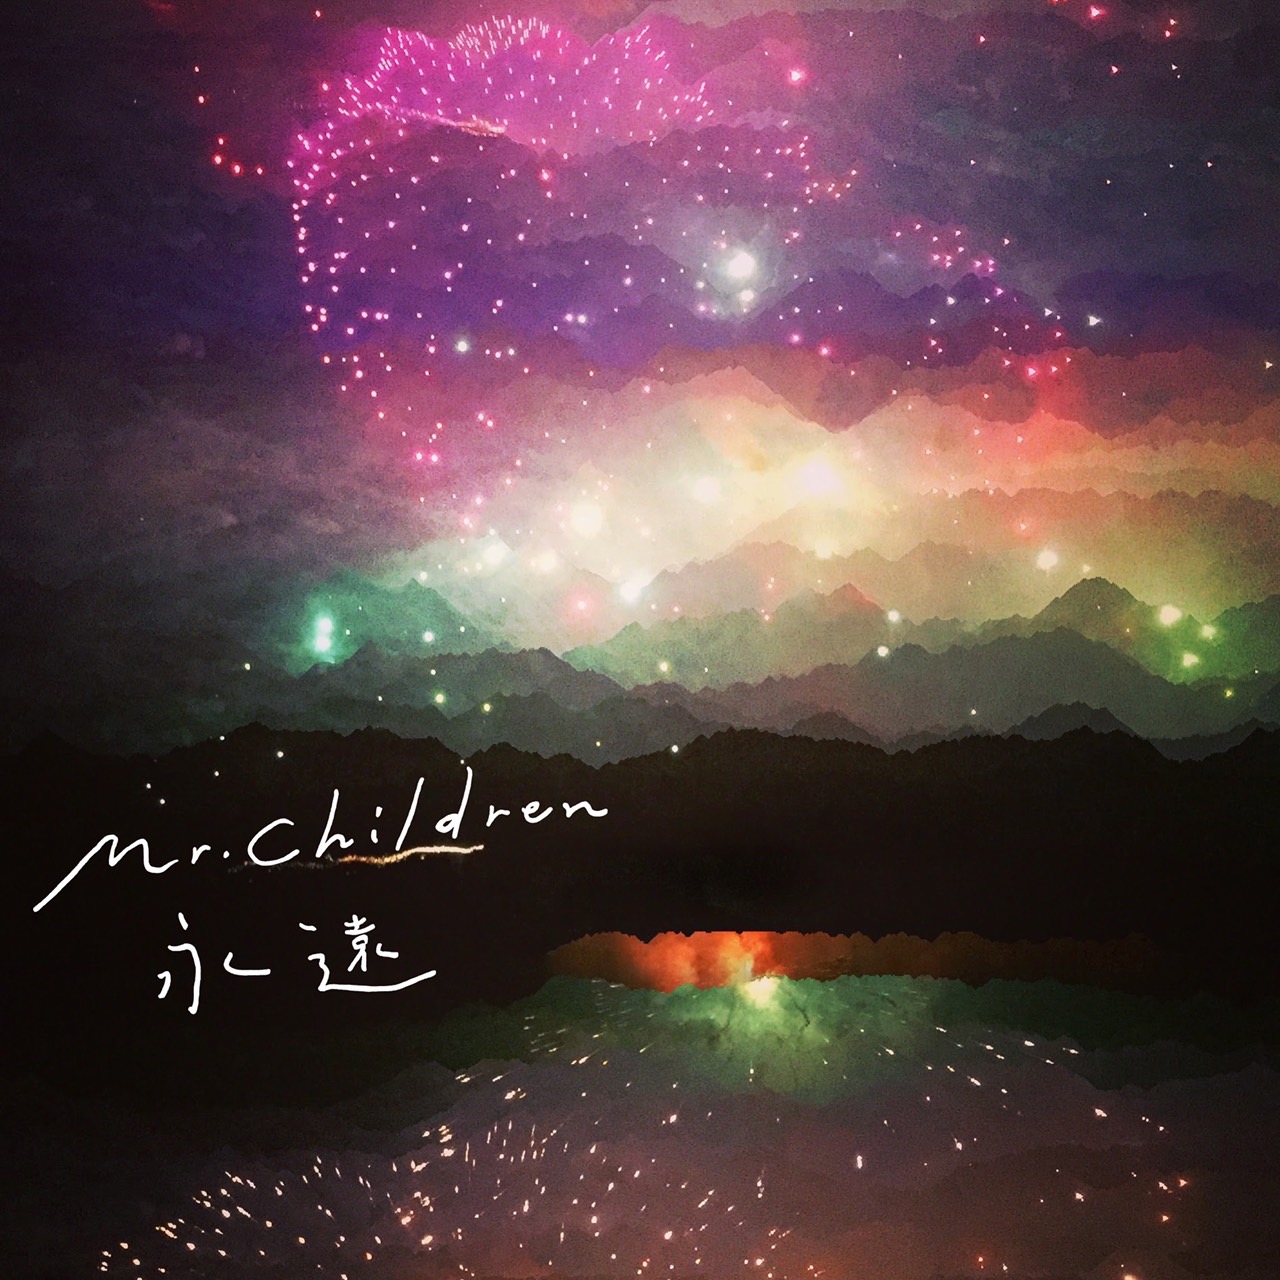 Mr.Childrenの新曲「永遠」のジャケットイメージ